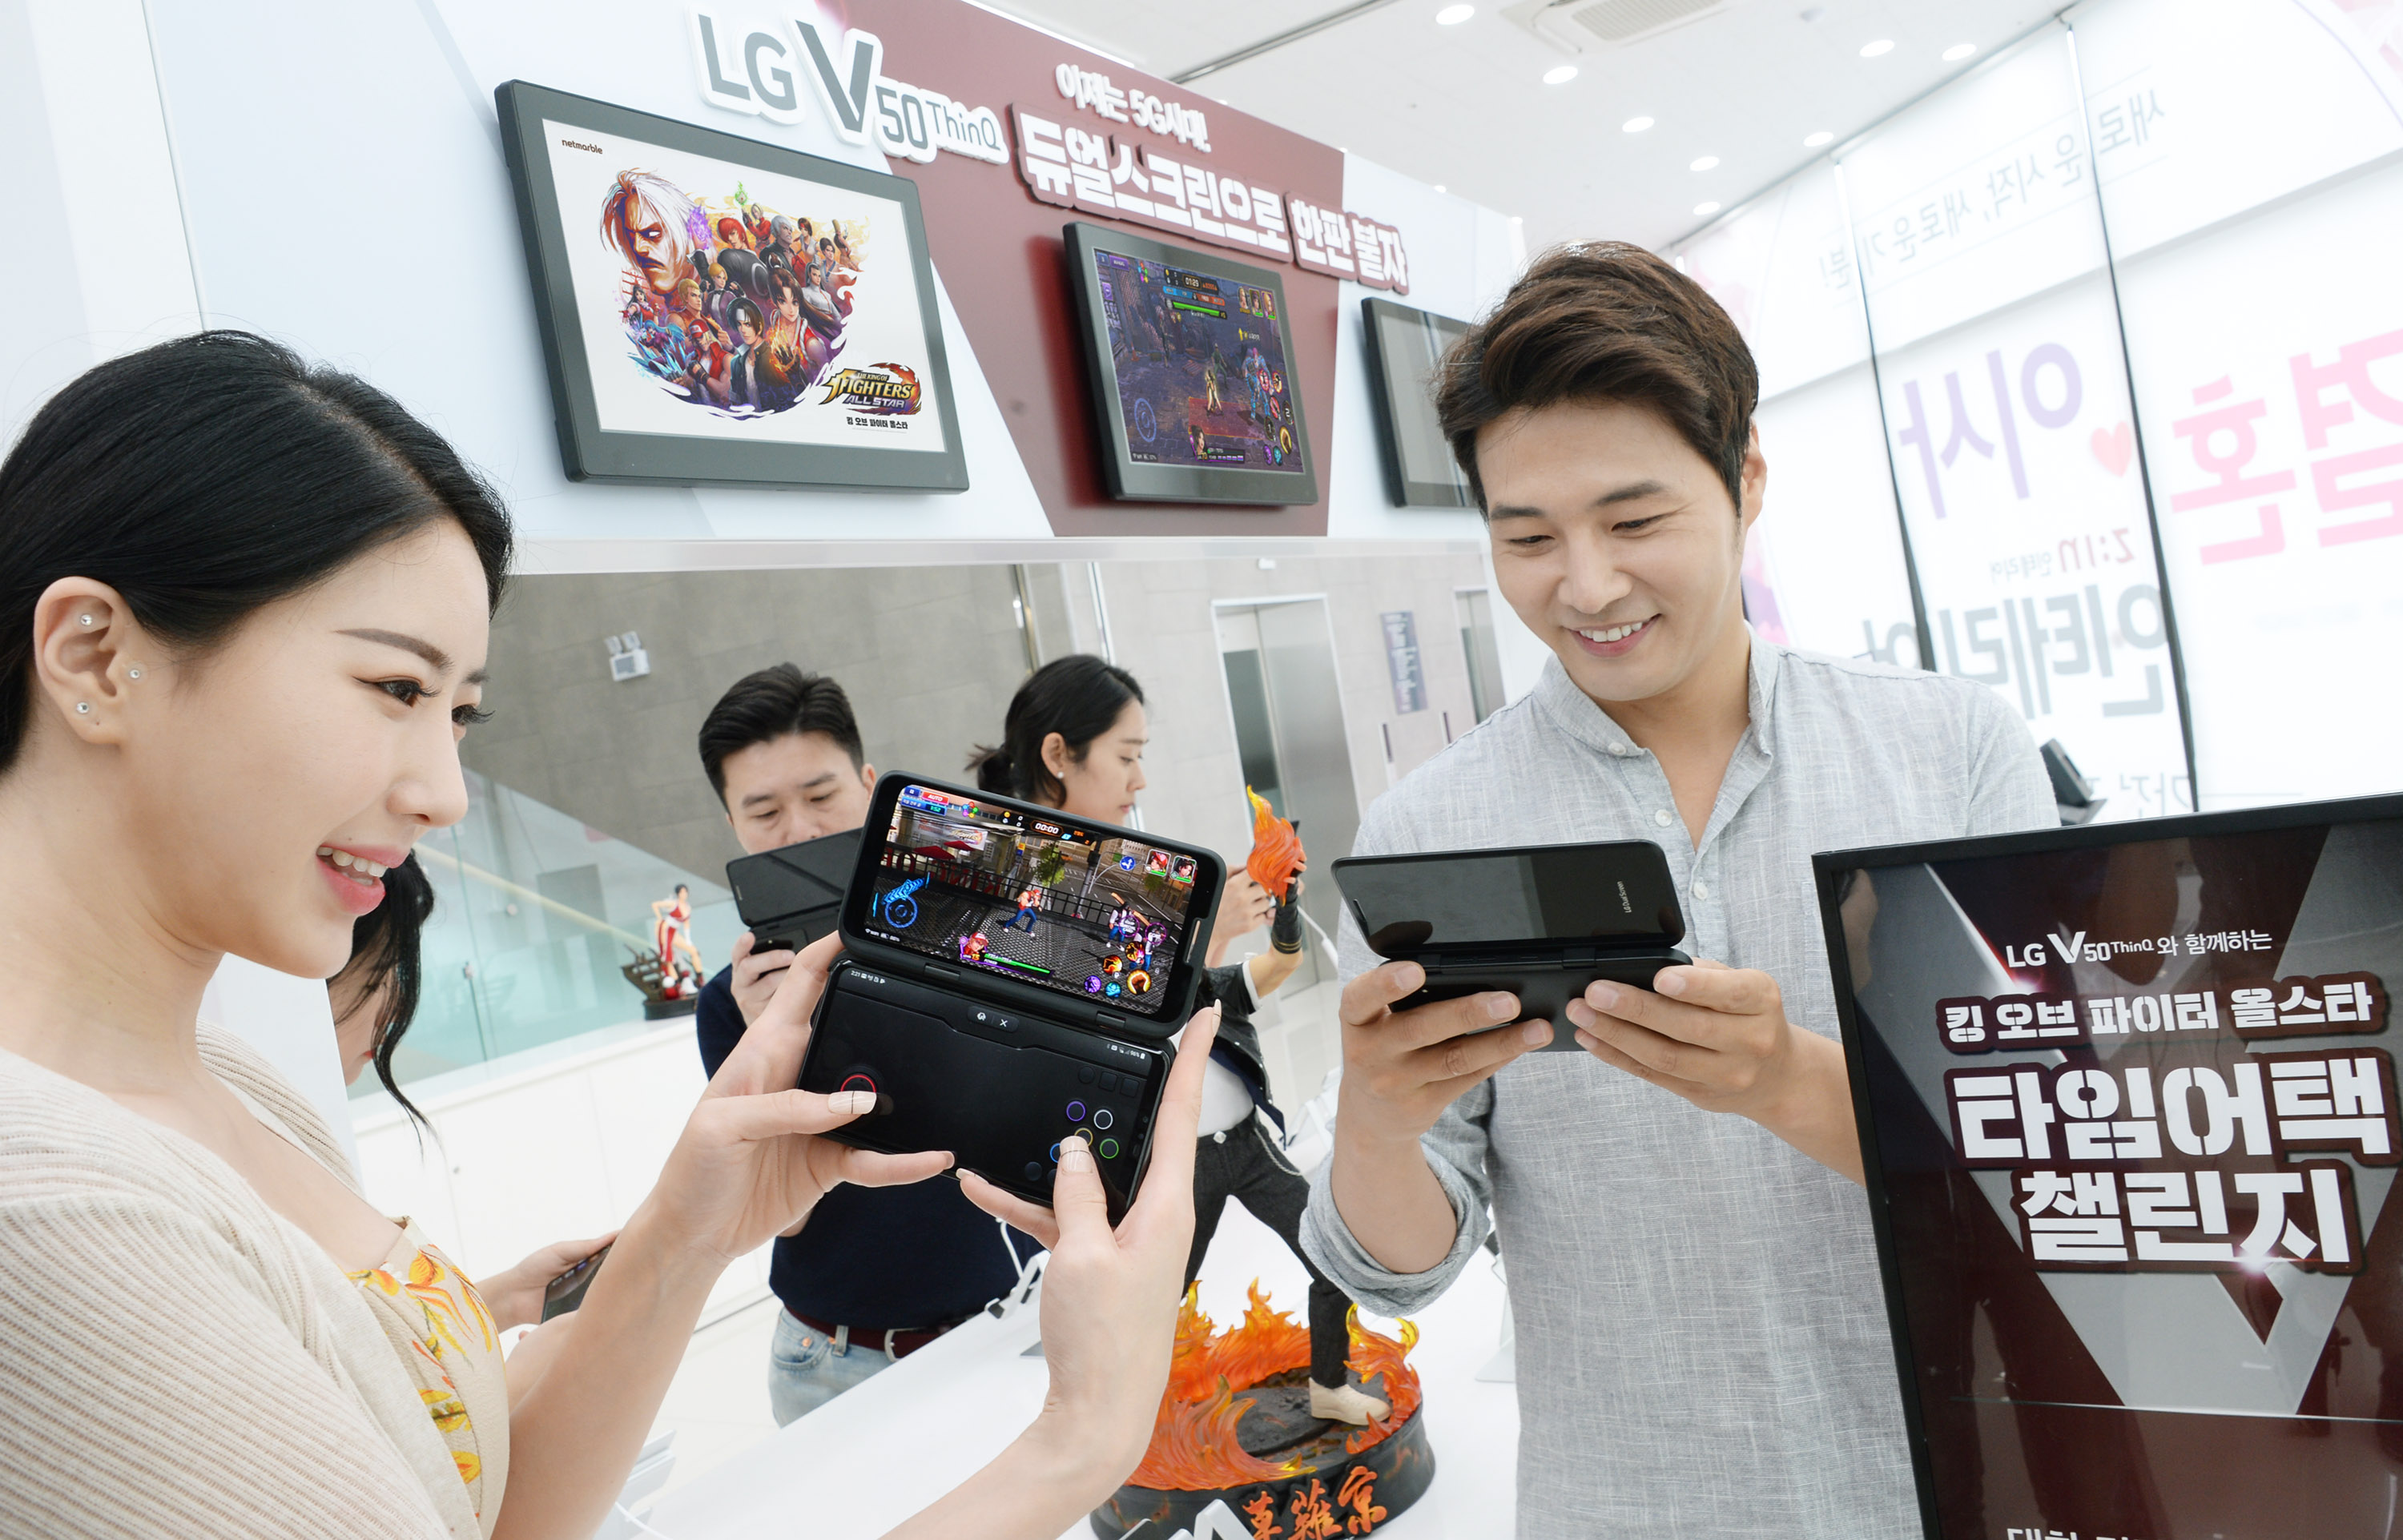 LG전자가 본격 열린 5G 시대를 맞아 이달 26일부터 내달 14일까지 전국 주요 LG베스트샵과 이동통신사 매장에서 모바일 게임 대회를 개최한다. LG전자 모델이 LG V50 ThinQ 와 LG 듀얼스크린으로 모바일 게임을 즐기고 있다. 